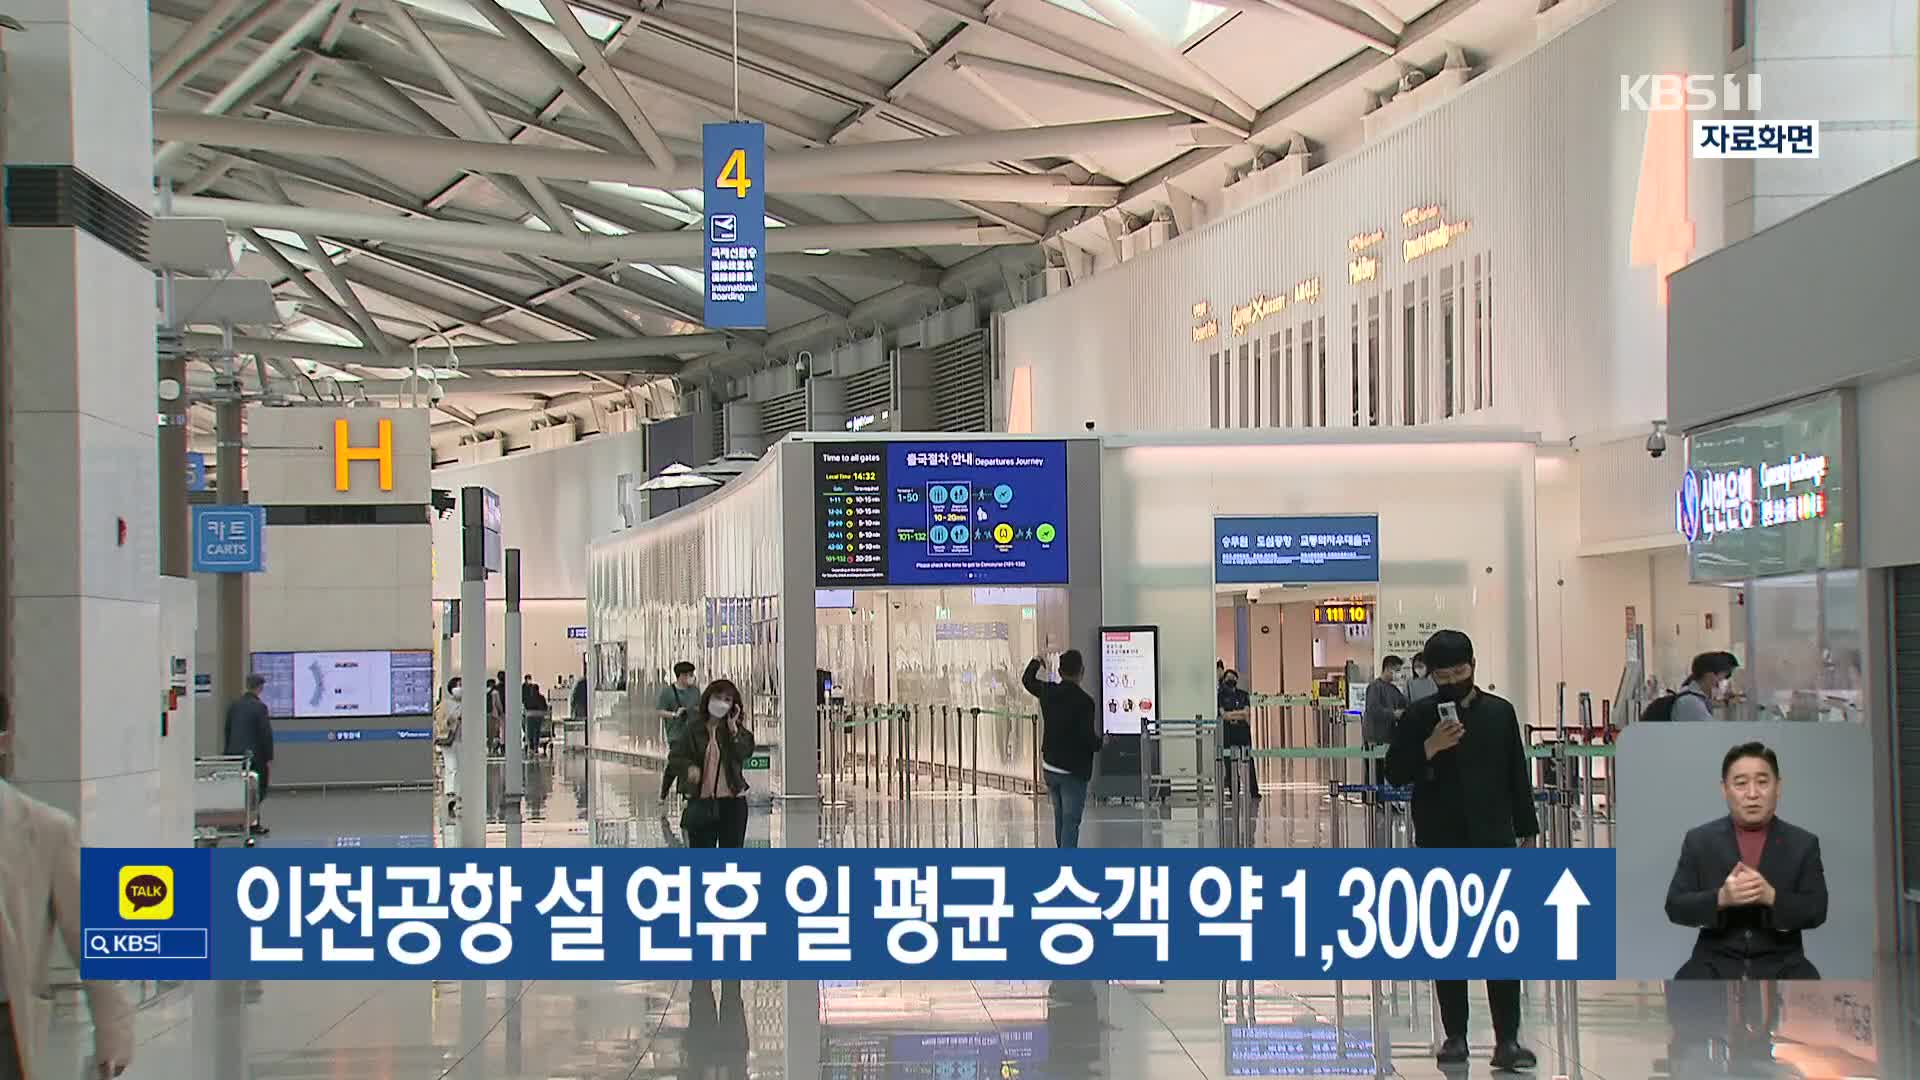 인천공항 설 연휴 일 평균 승객 약 1,300%↑